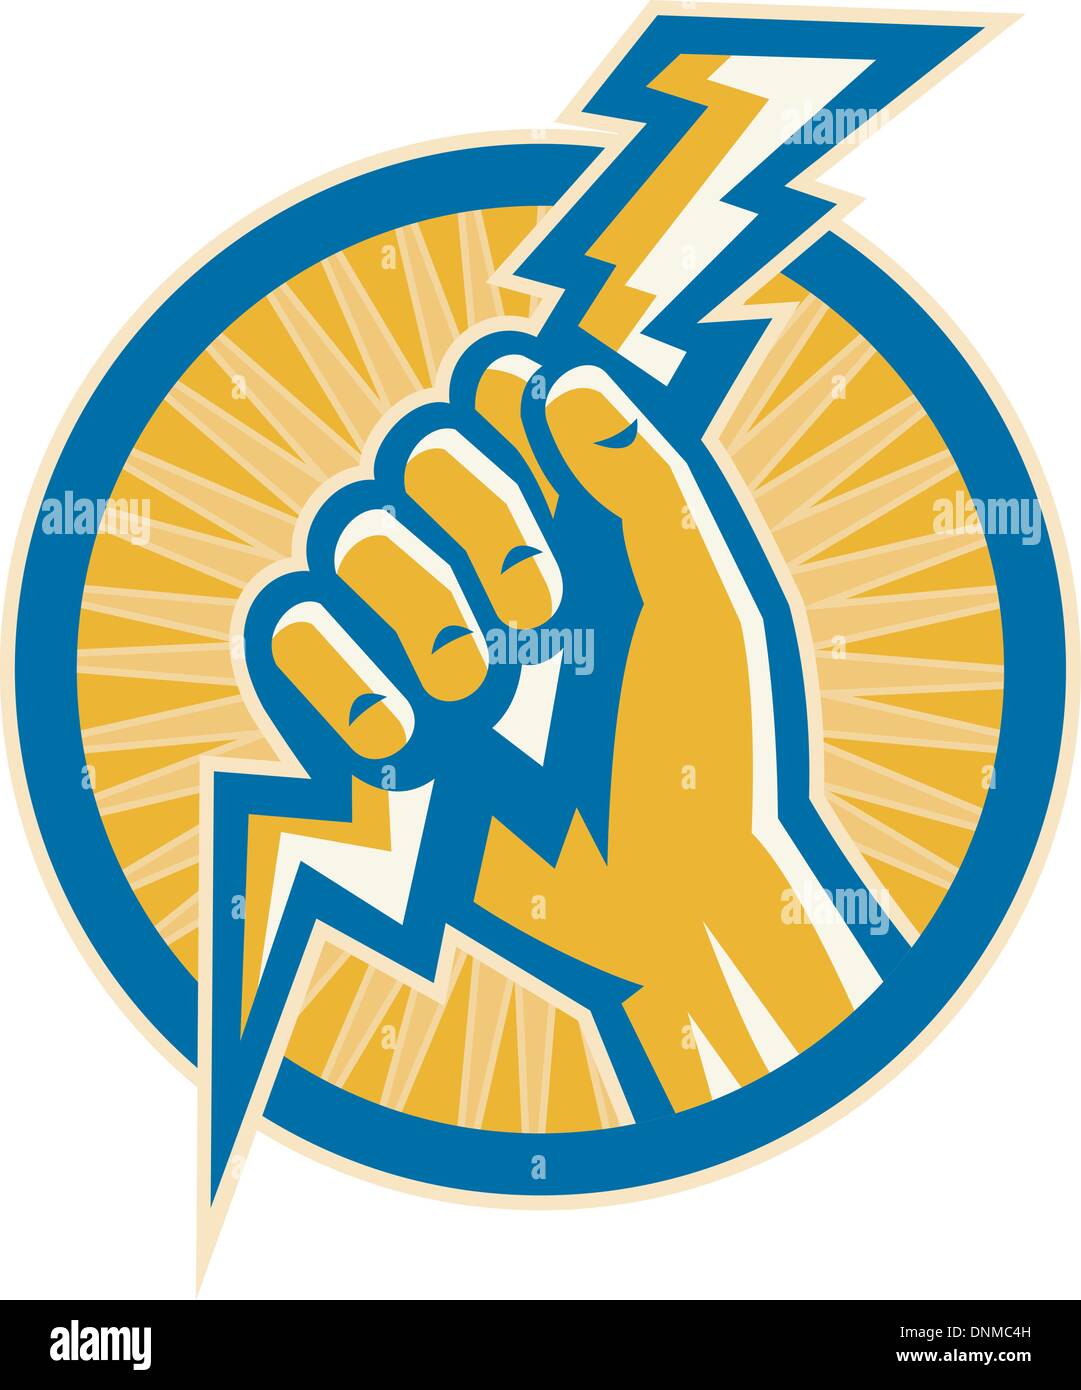 Illustrazione o immagini che mostra una mano tenere un fulmine di energia elettrica imposta all'interno di un cerchio. Illustrazione Vettoriale